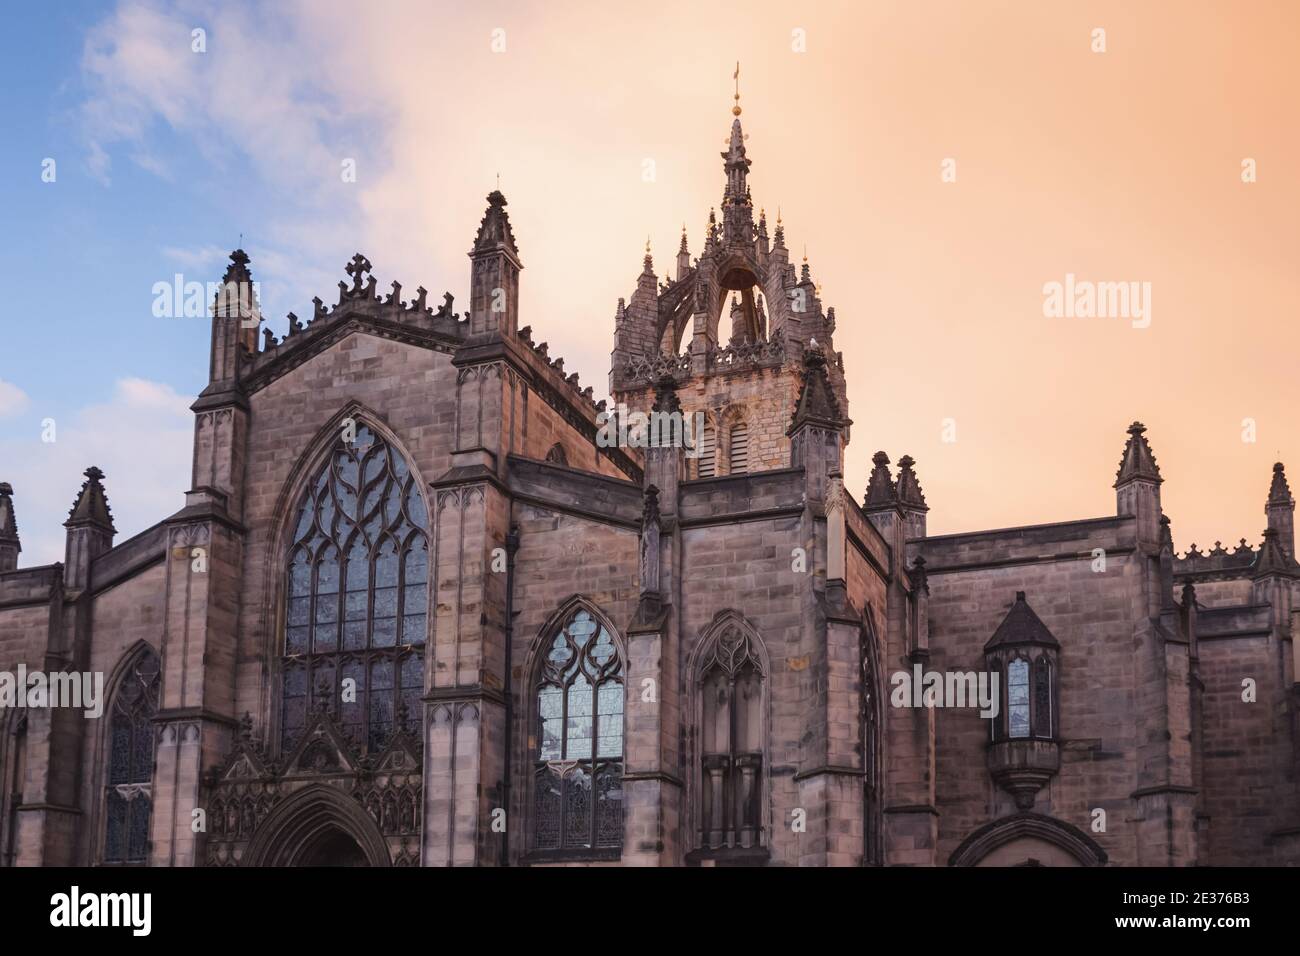 Die gotische Architektur der St, Giles' Cathedral vor einem dramatischen Sonnenuntergang Himmel entlang der Royal Mile in Edinburghs Altstadt. Stockfoto